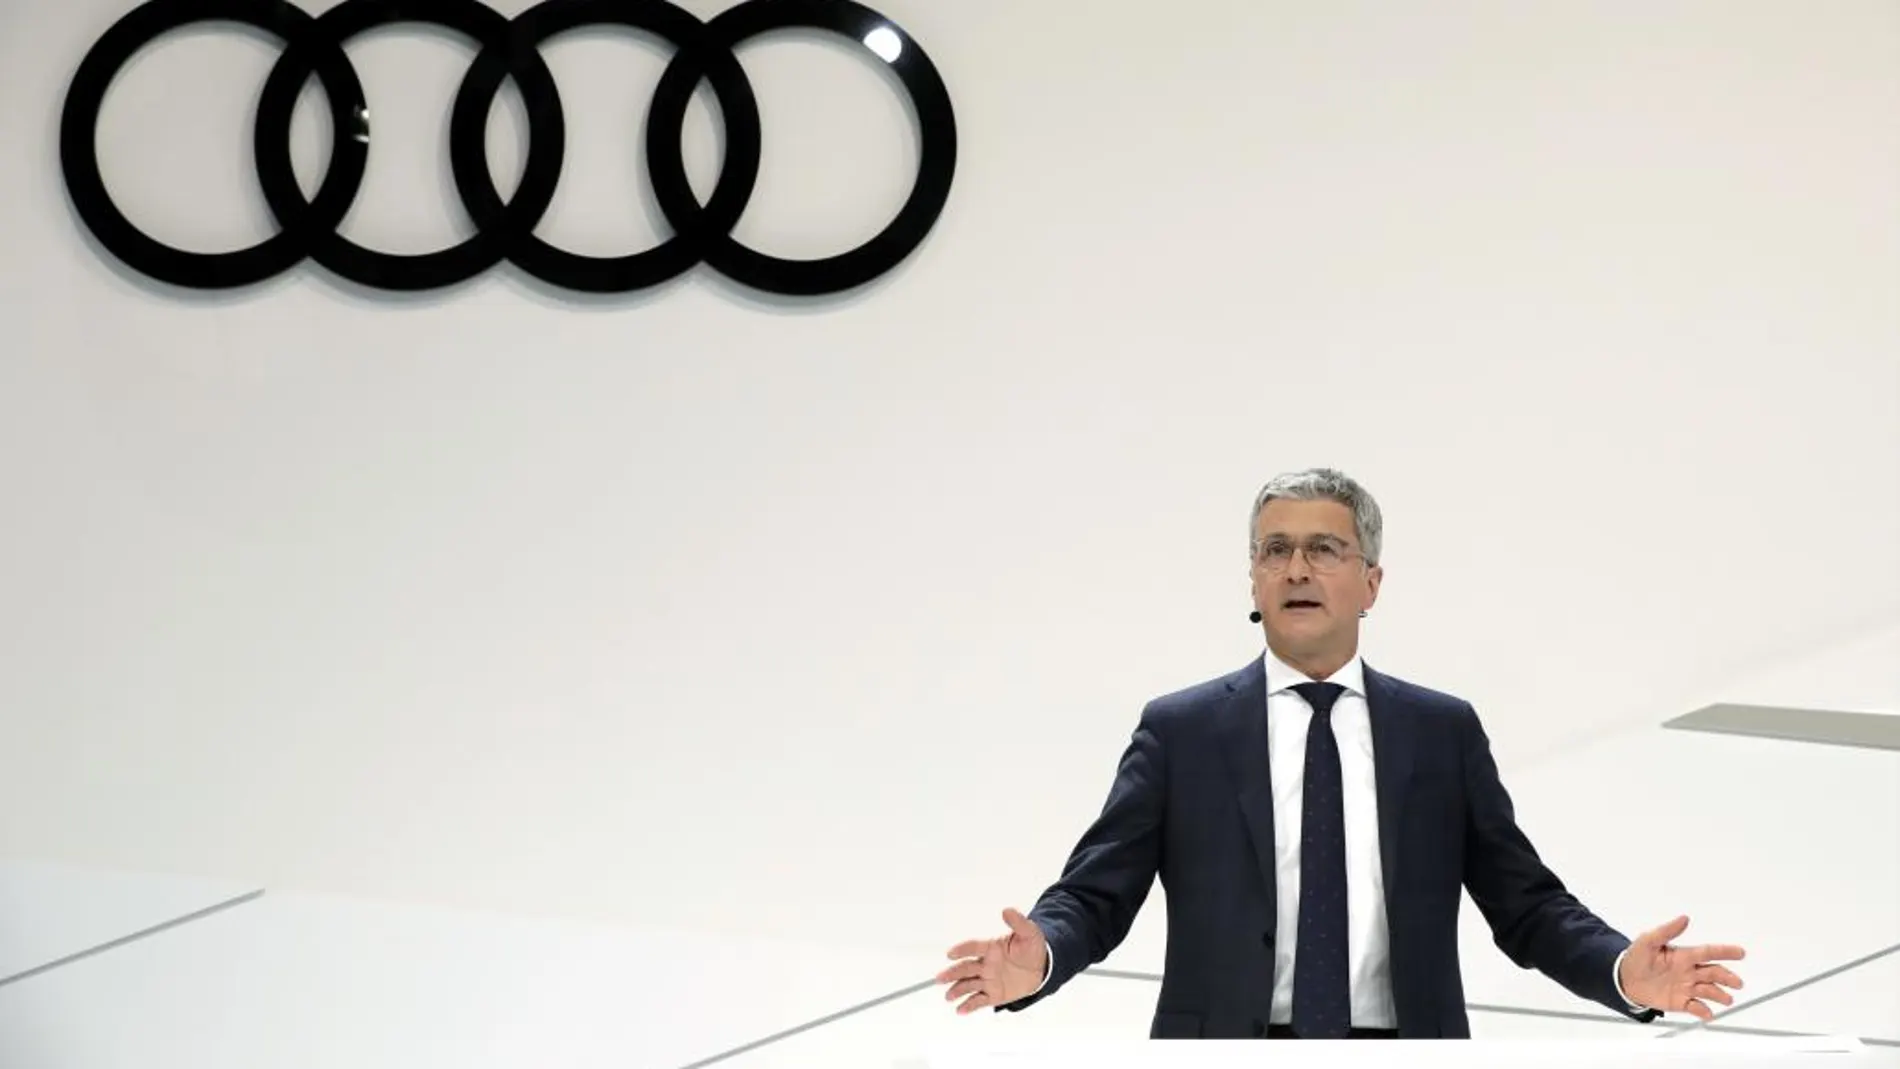 Rupert Stadler,CEO de Audi, en la rueda de prensa anual